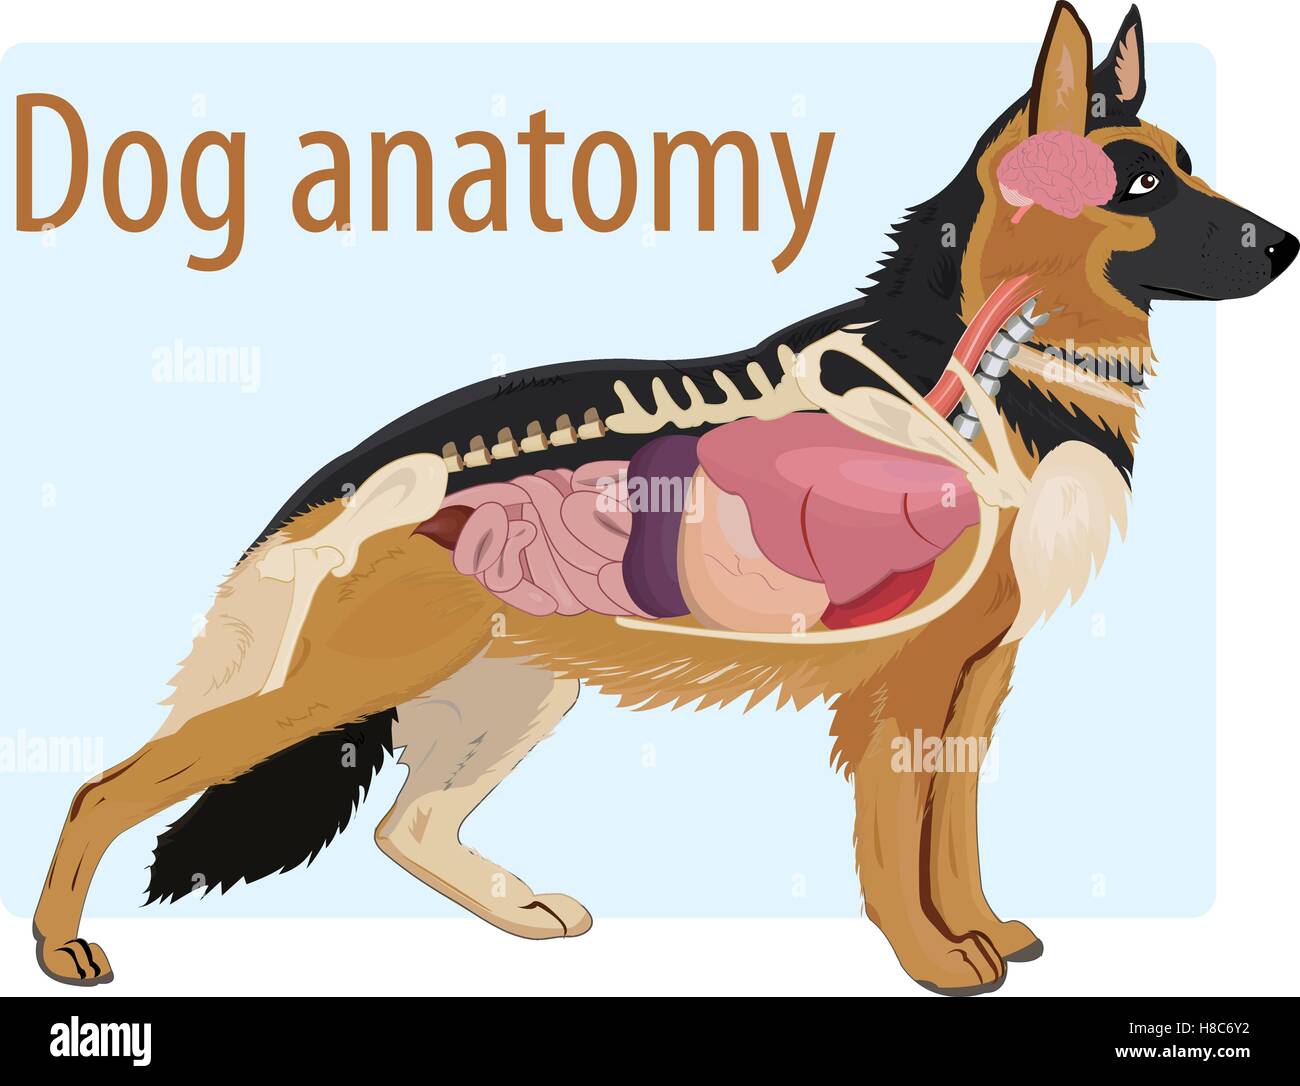 Anatomie du chien domestique illustration Illustration de Vecteur